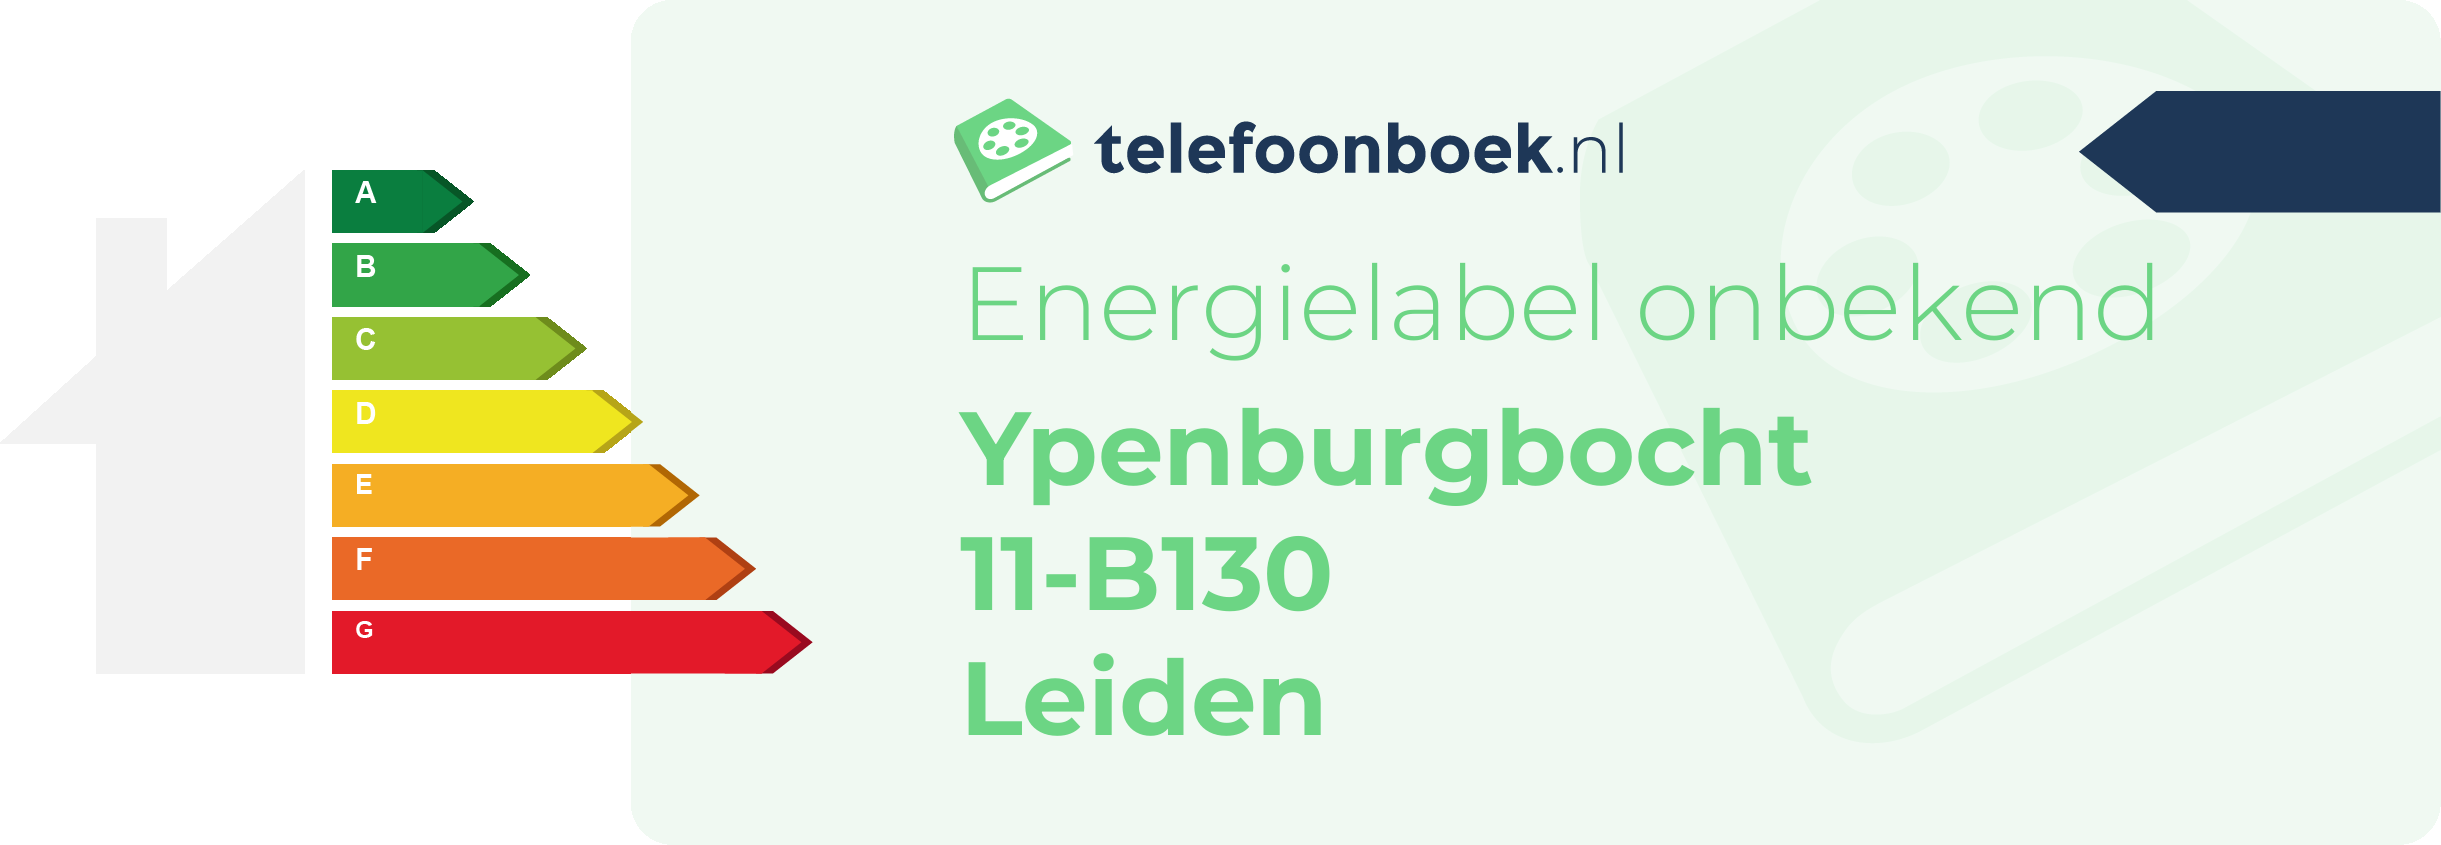 Energielabel Ypenburgbocht 11-B130 Leiden